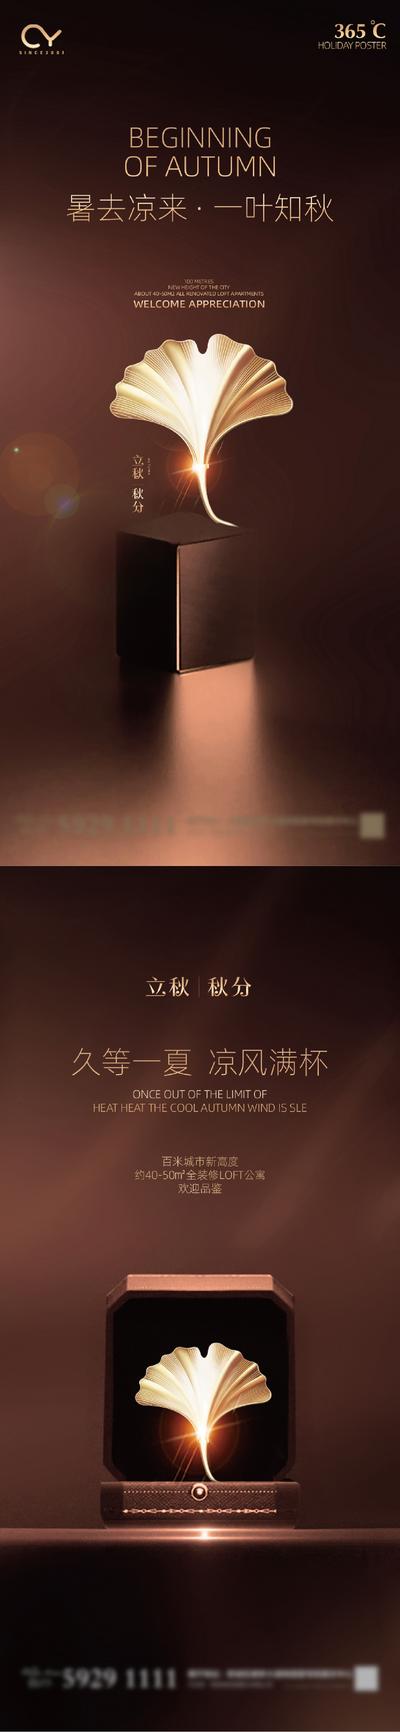 南门网 海报 二十四节气 秋分 银杏叶 树叶